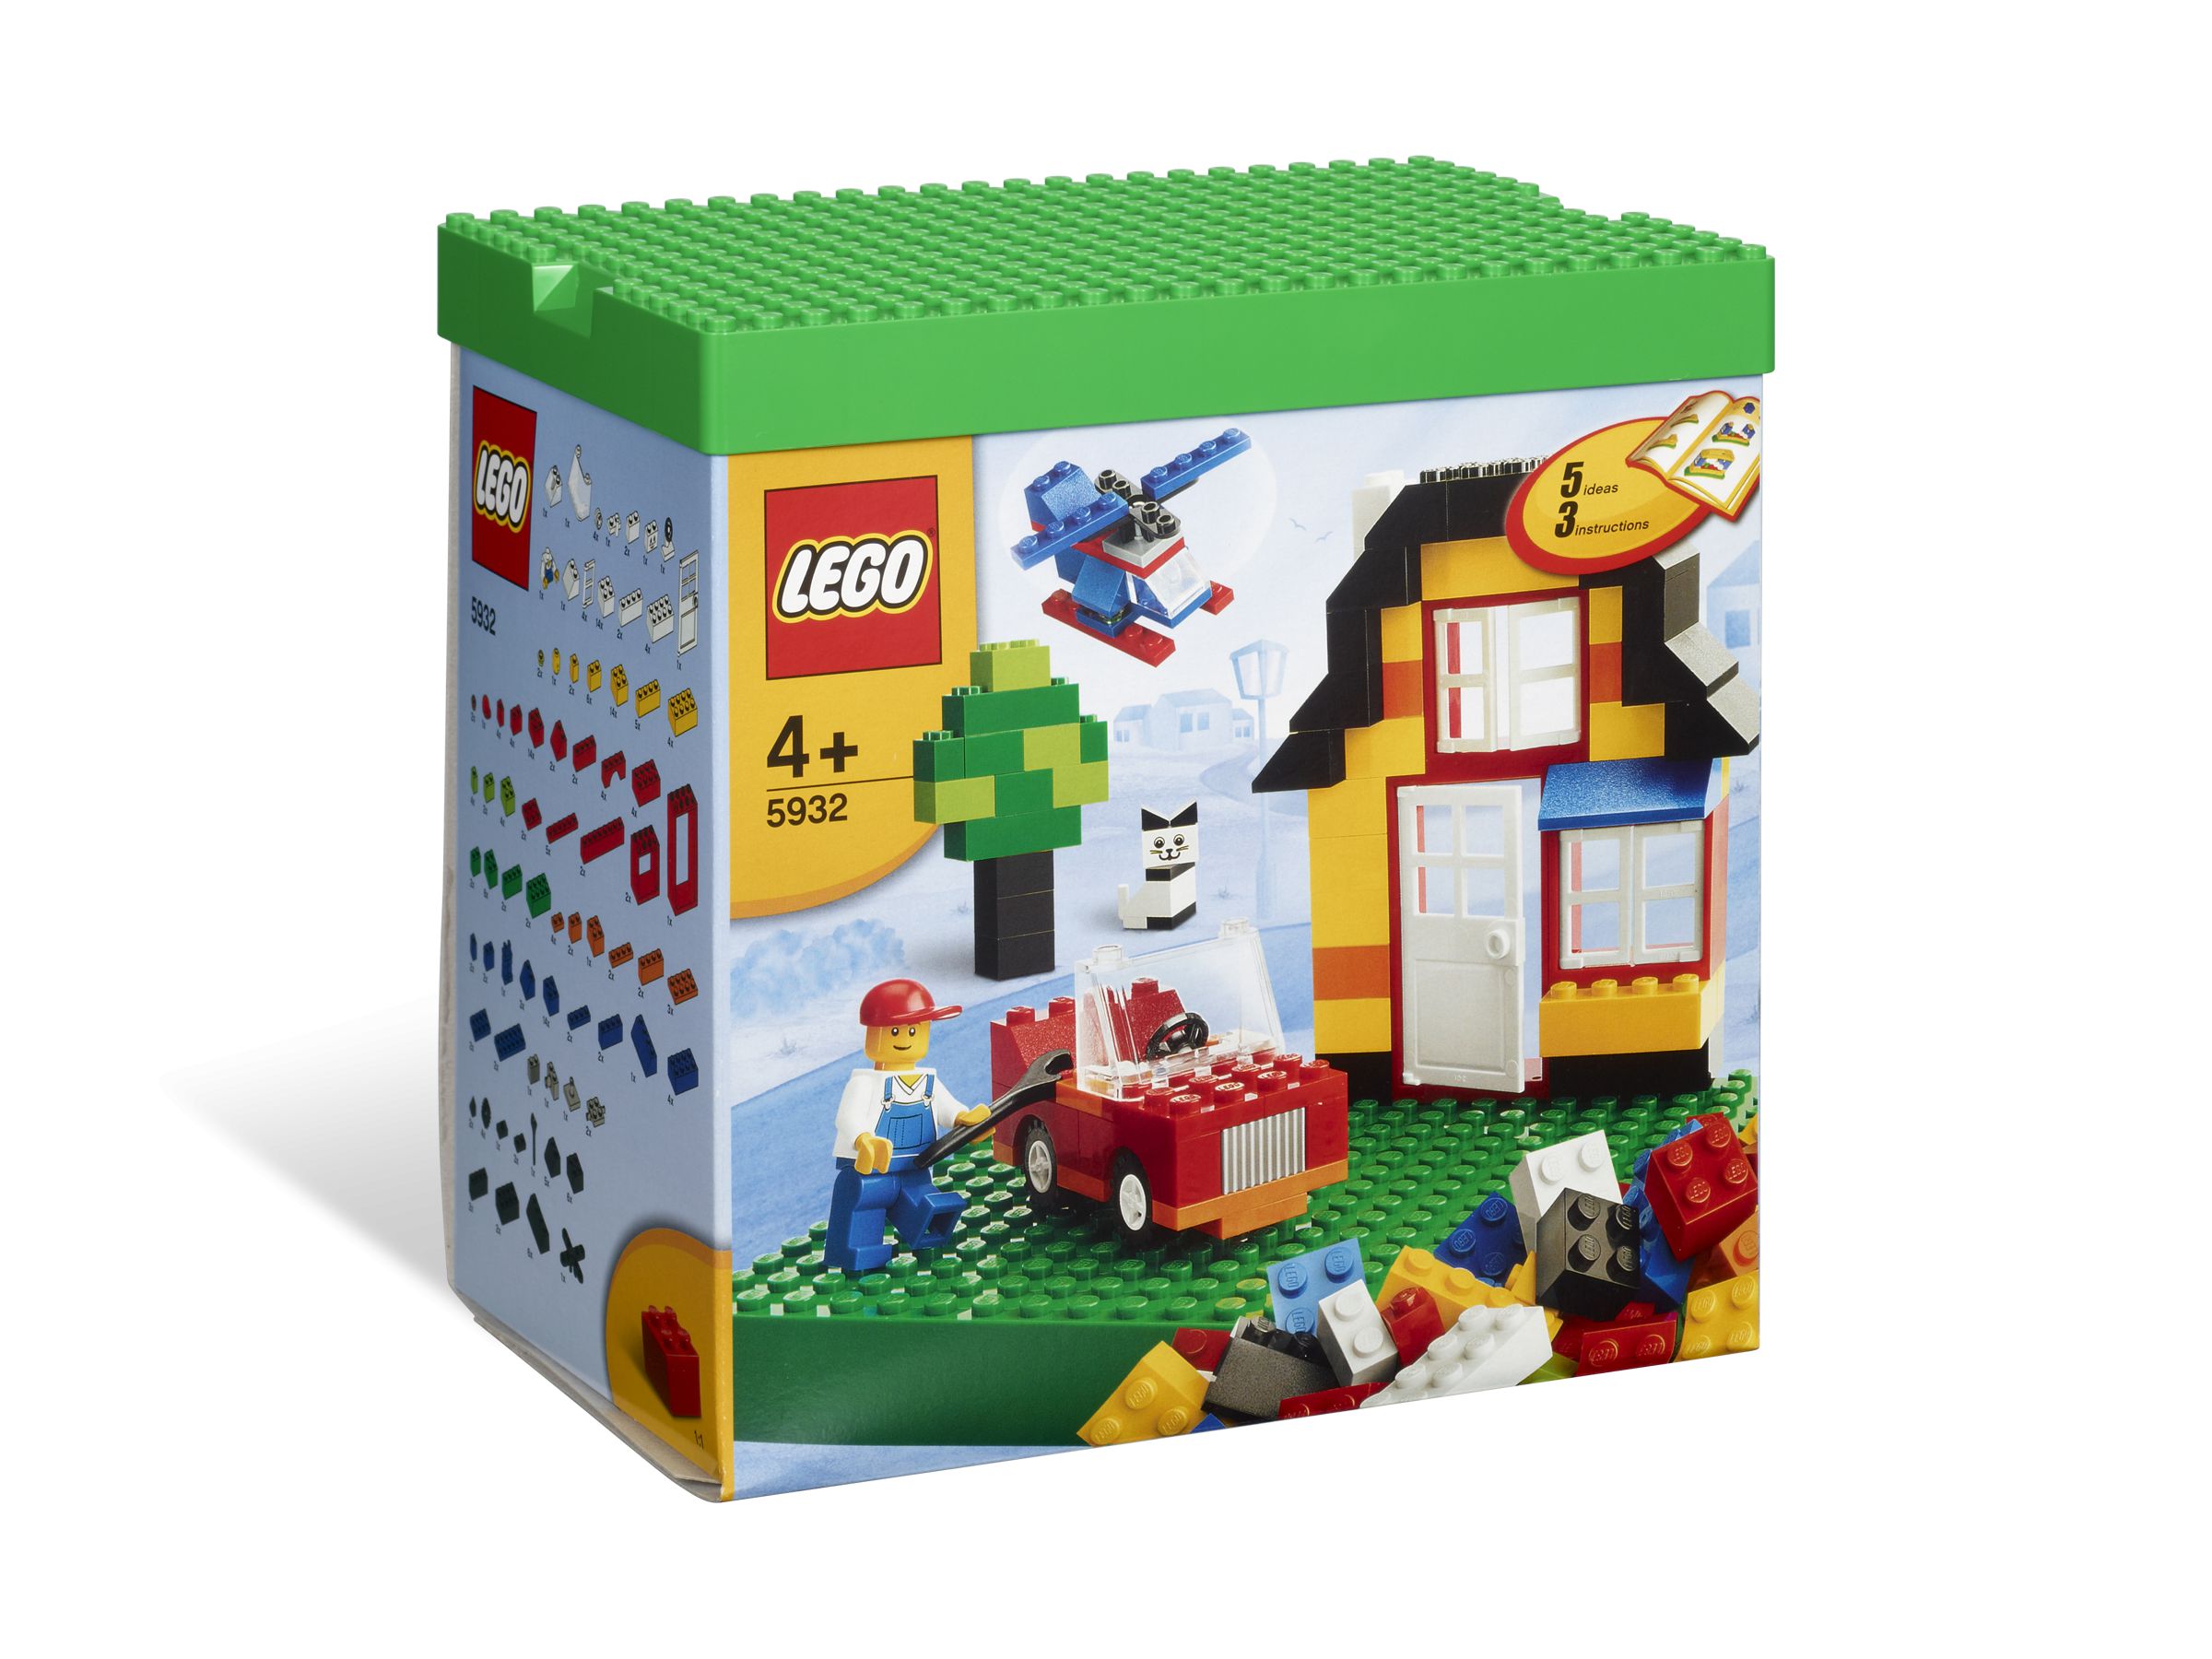 LEGO Bricks and More 5932 Steine & Co. 5932 Mein erstes LEGO® Set LEGO_5932_alt1.jpg